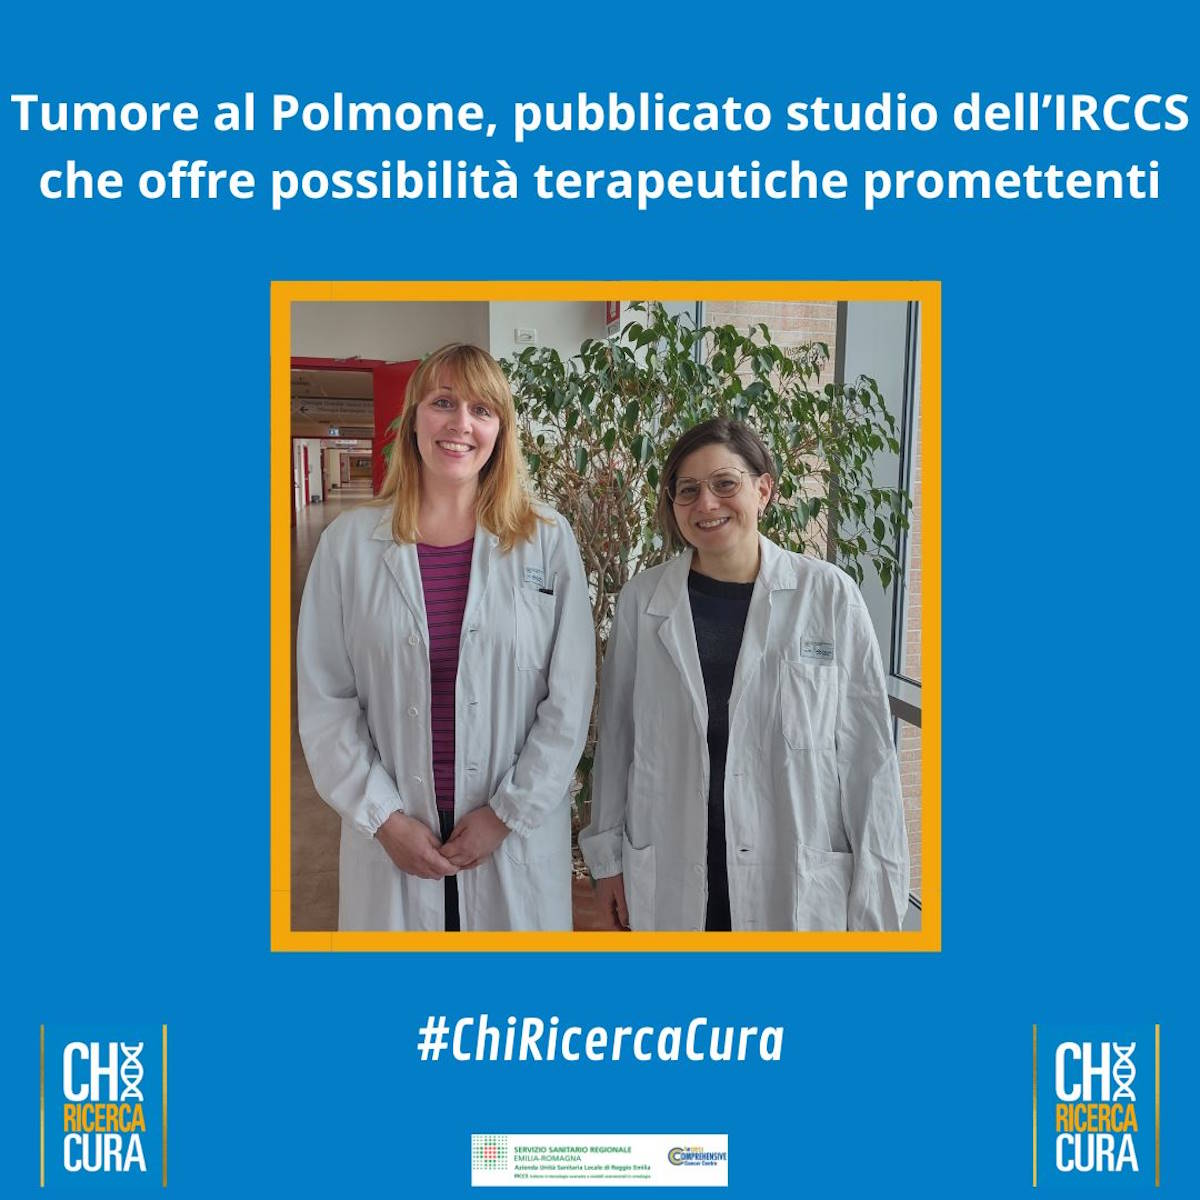 Tumore al Polmone, nuove e promettenti possibilità terapeutiche grazie a uno studio dell’IRCCS di Reggio Emilia